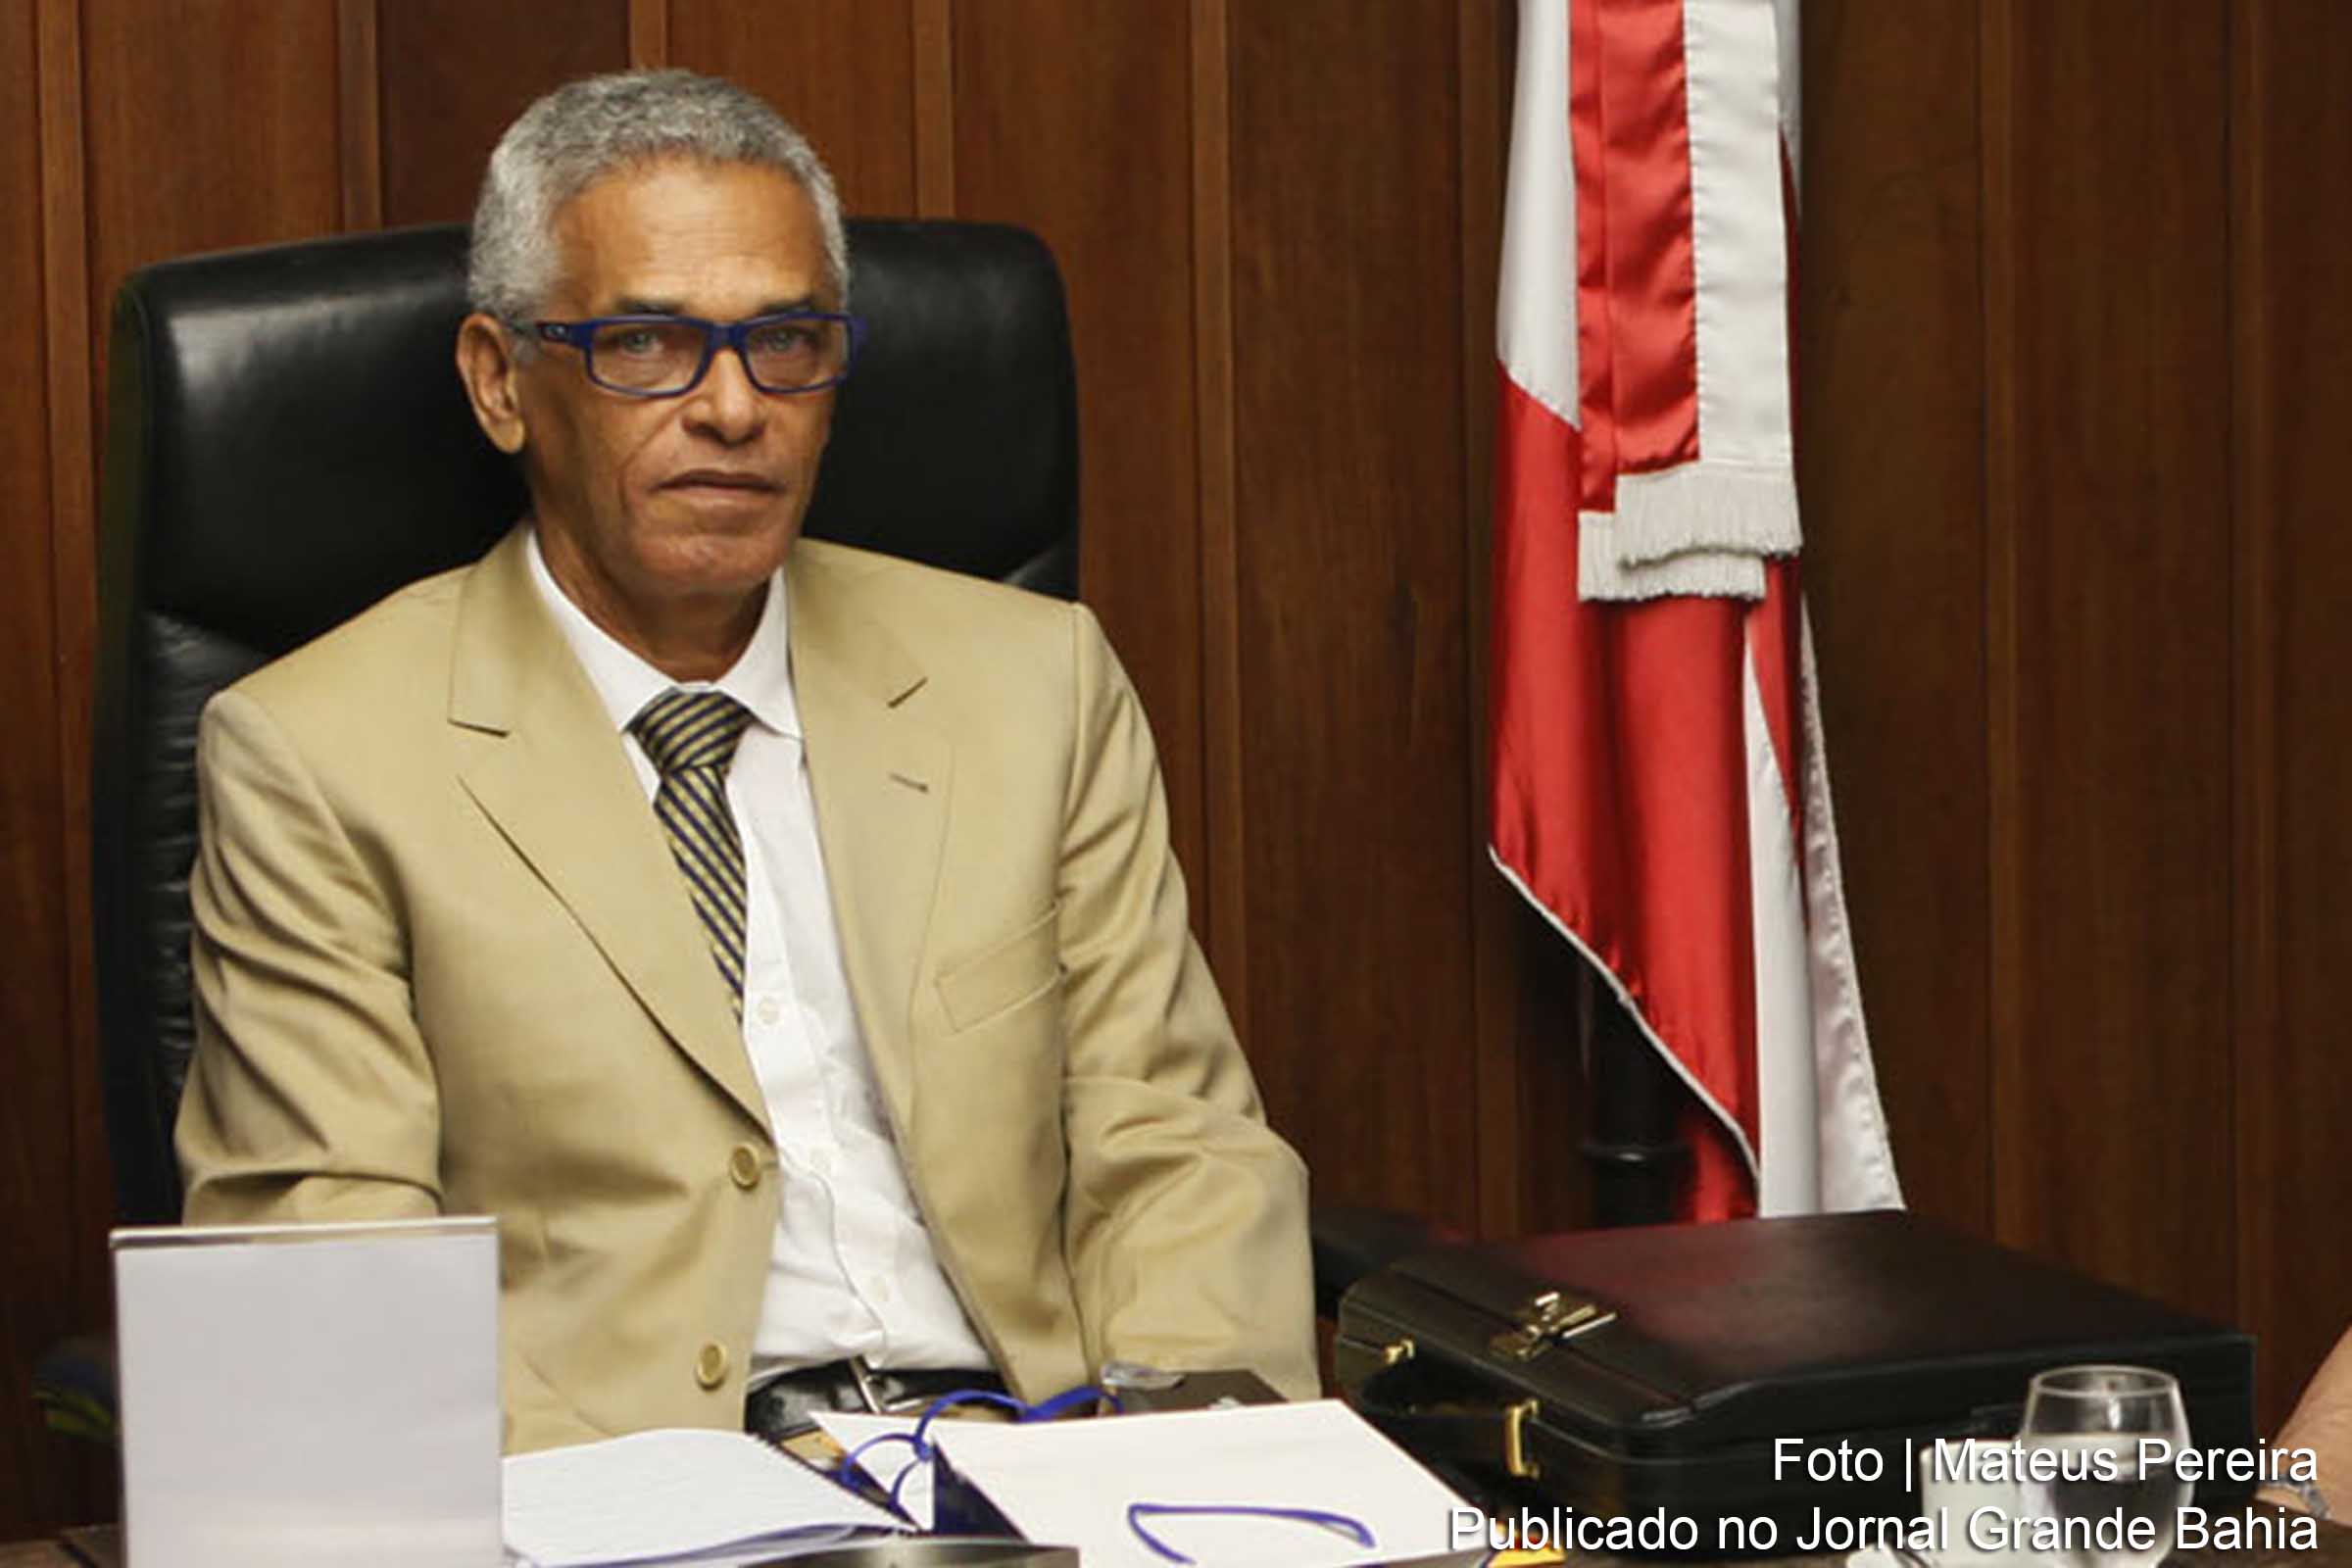 Presidência do Tribunal de Justiça da Bahia, Eserval Rocha, anuncia ampliação dos serviços judiciais no interior da Bahia.